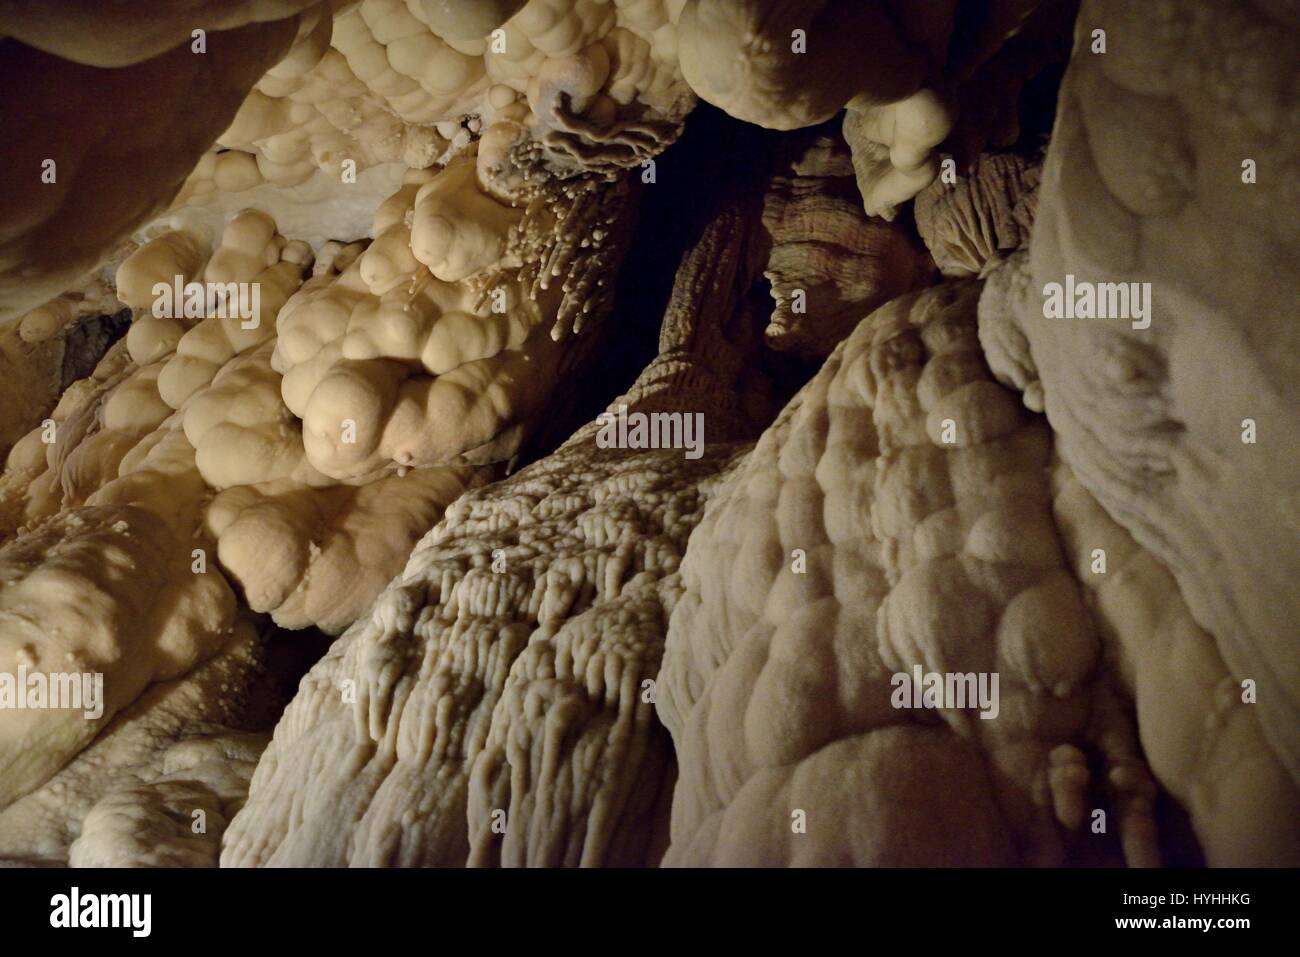 Toirano Caves internal view - Italy Stock Photo